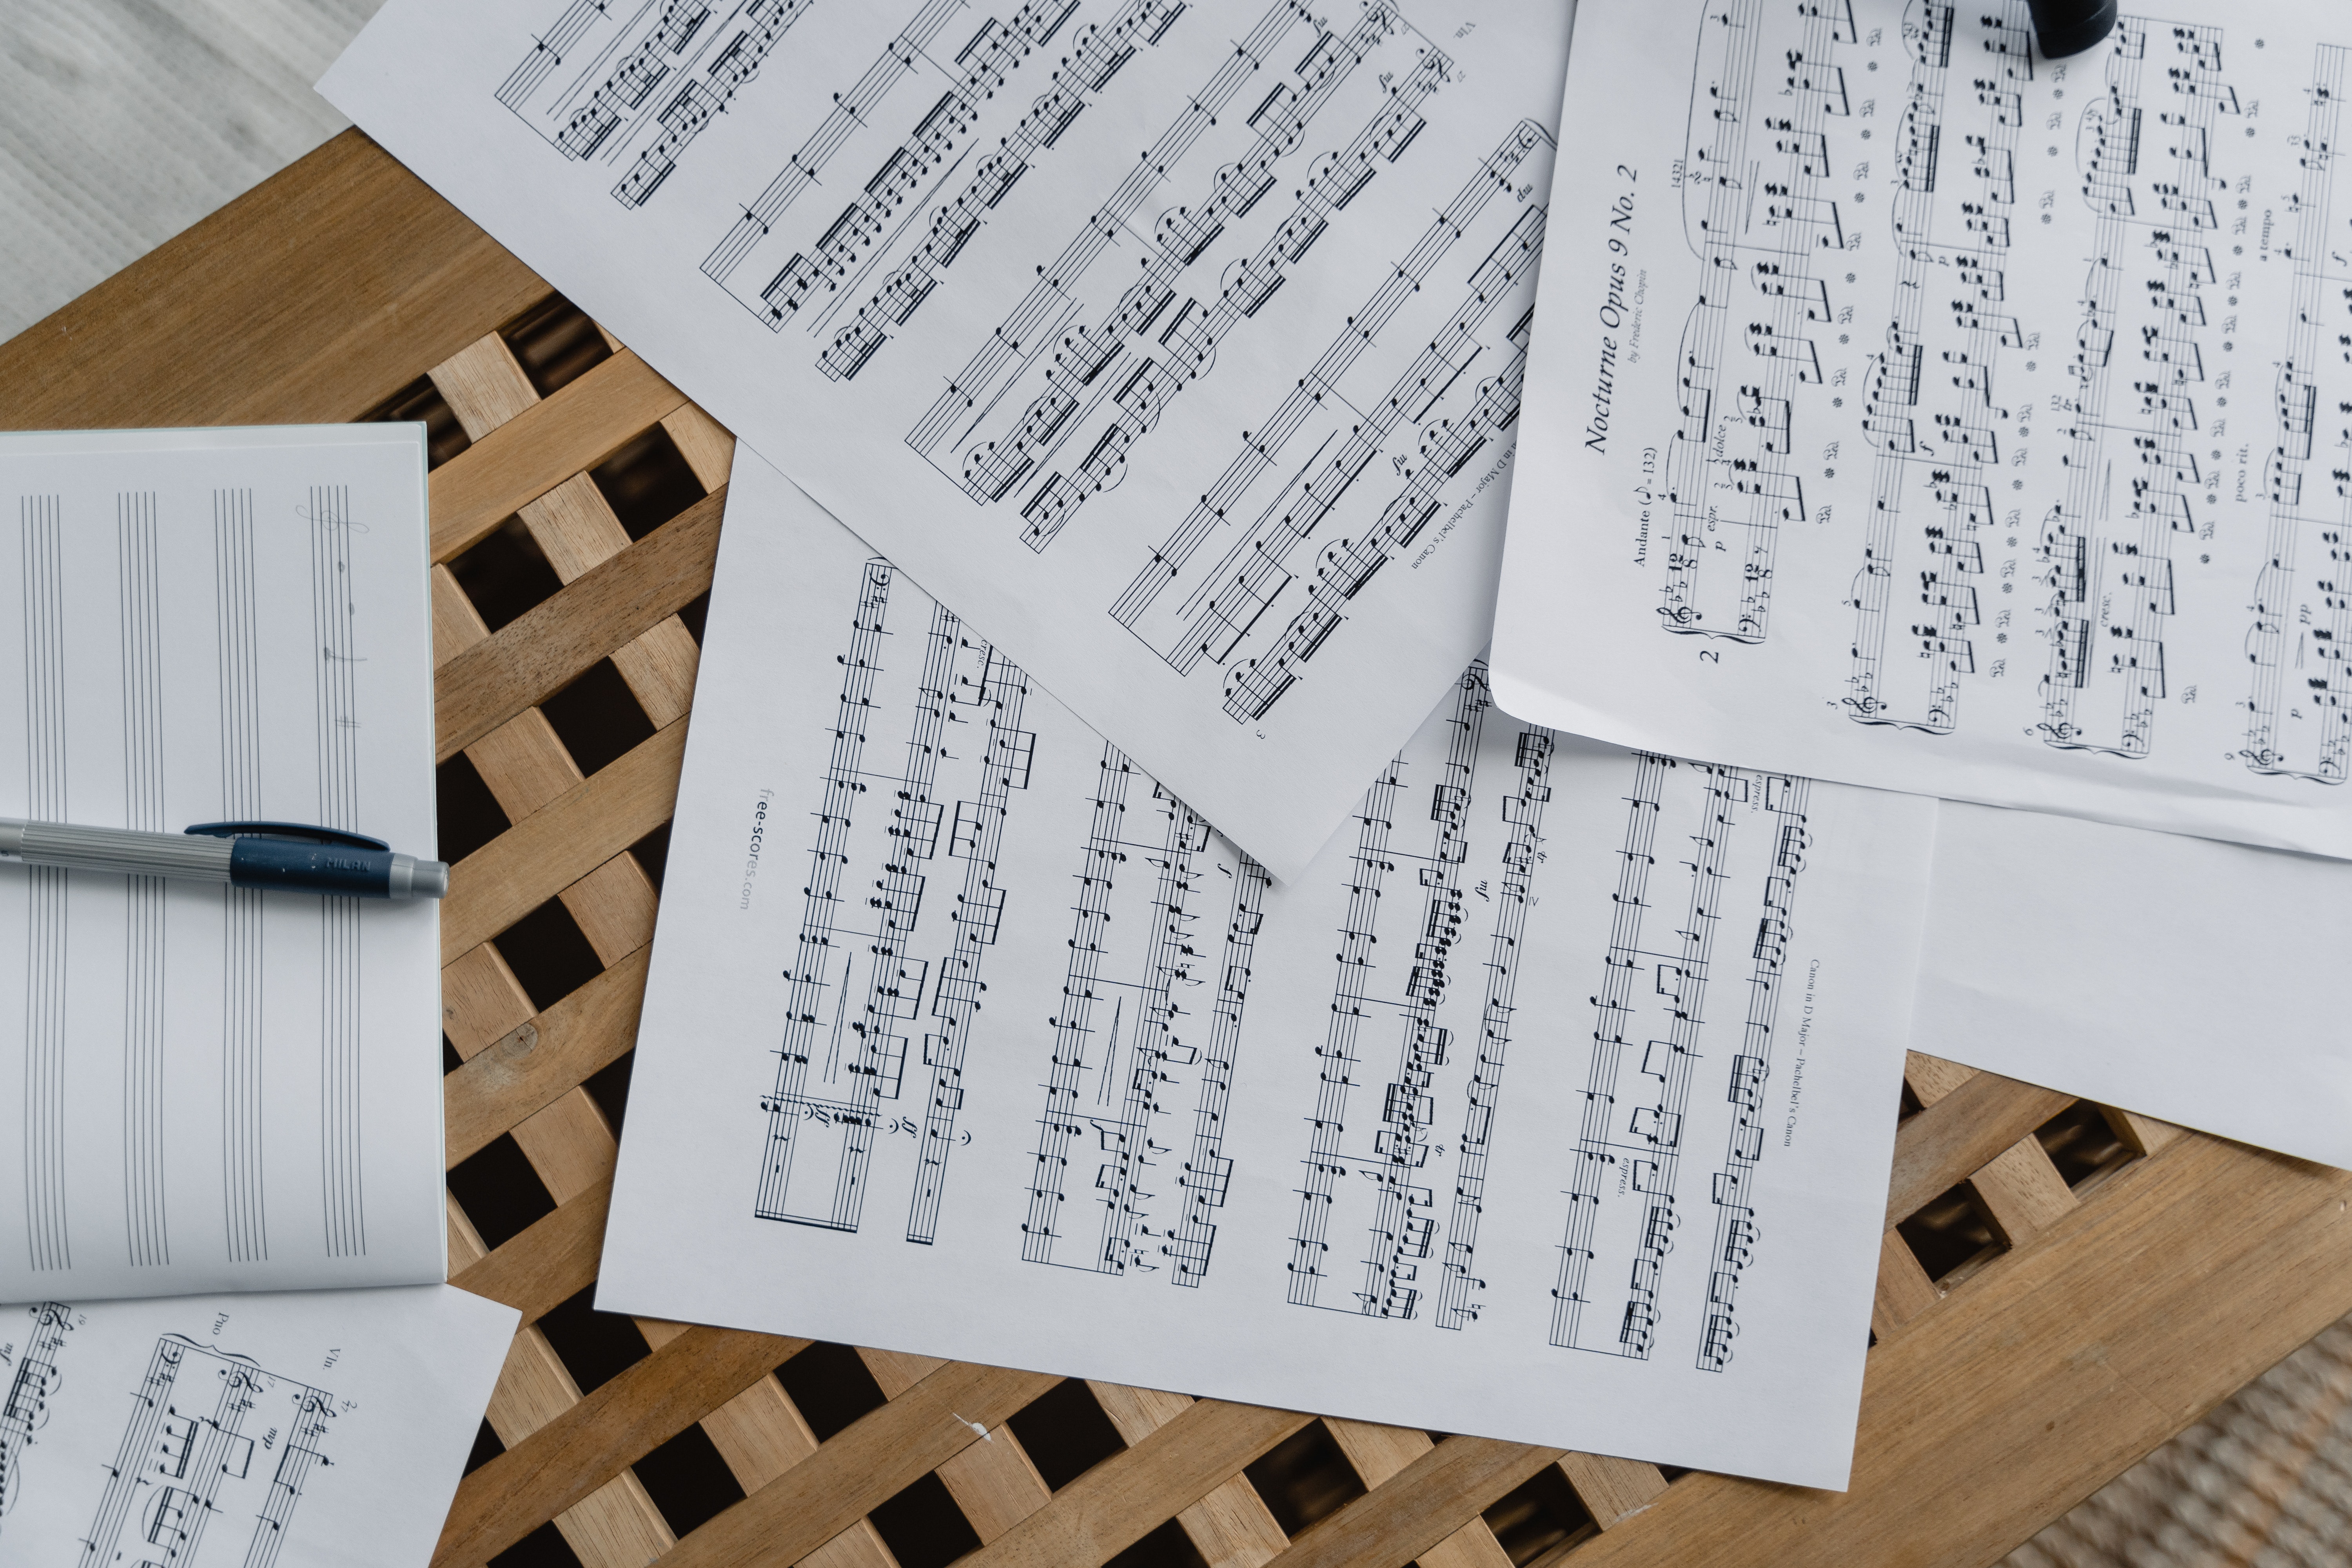 Solfège piano : La théorie musicale est-elle obligatoire ? - Cours de  musique à domicile